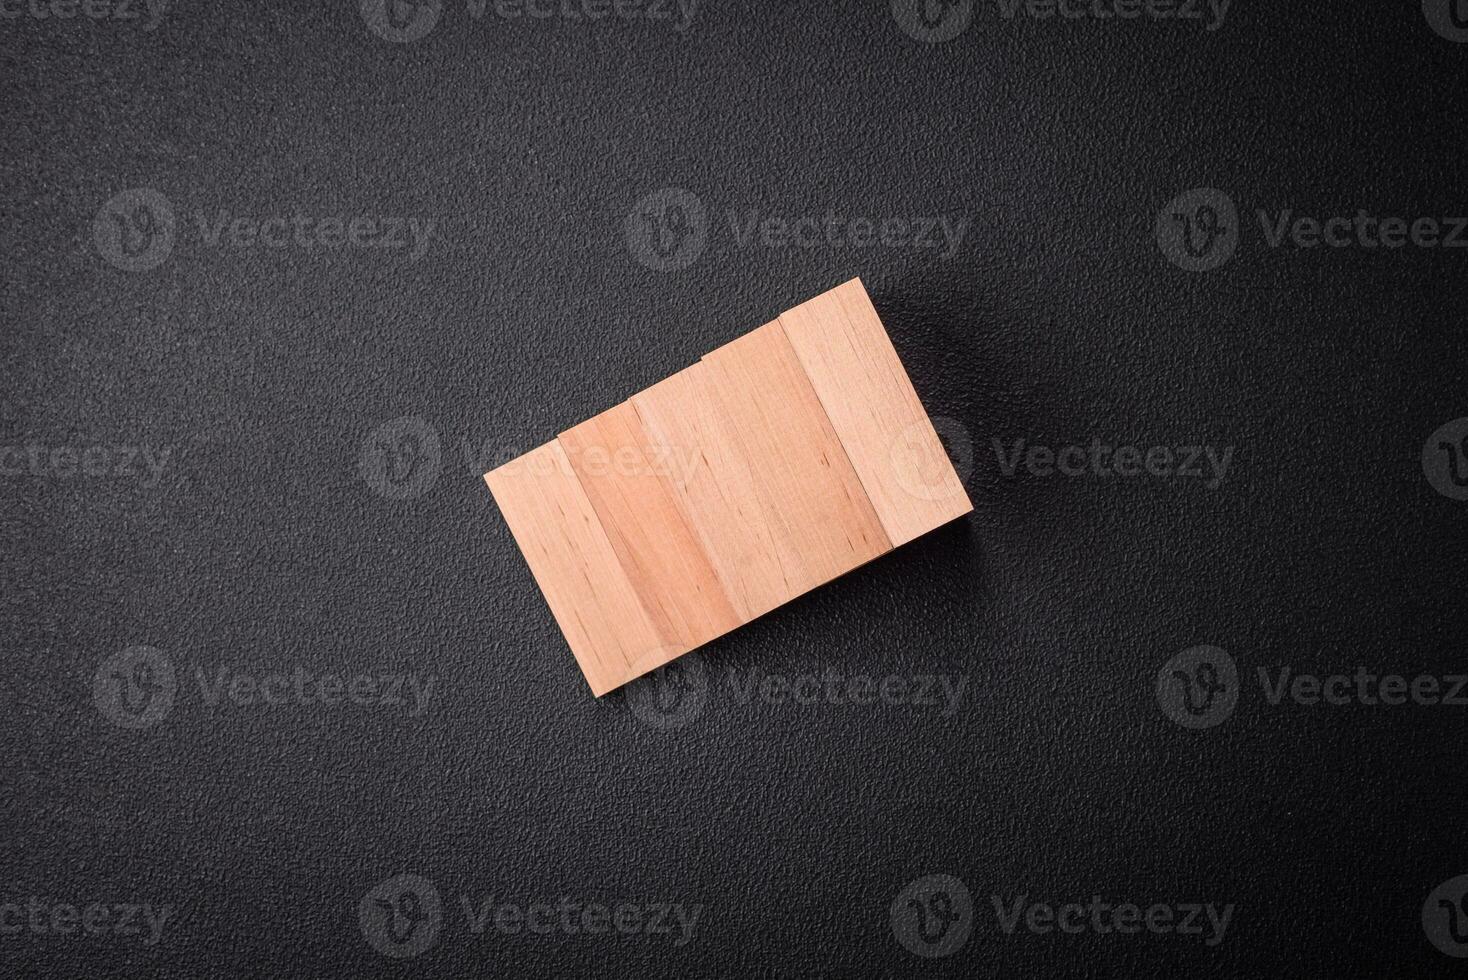 houten stappen gemaakt van blokken net zo een idee van investering en winst groei in bereiken een doel foto